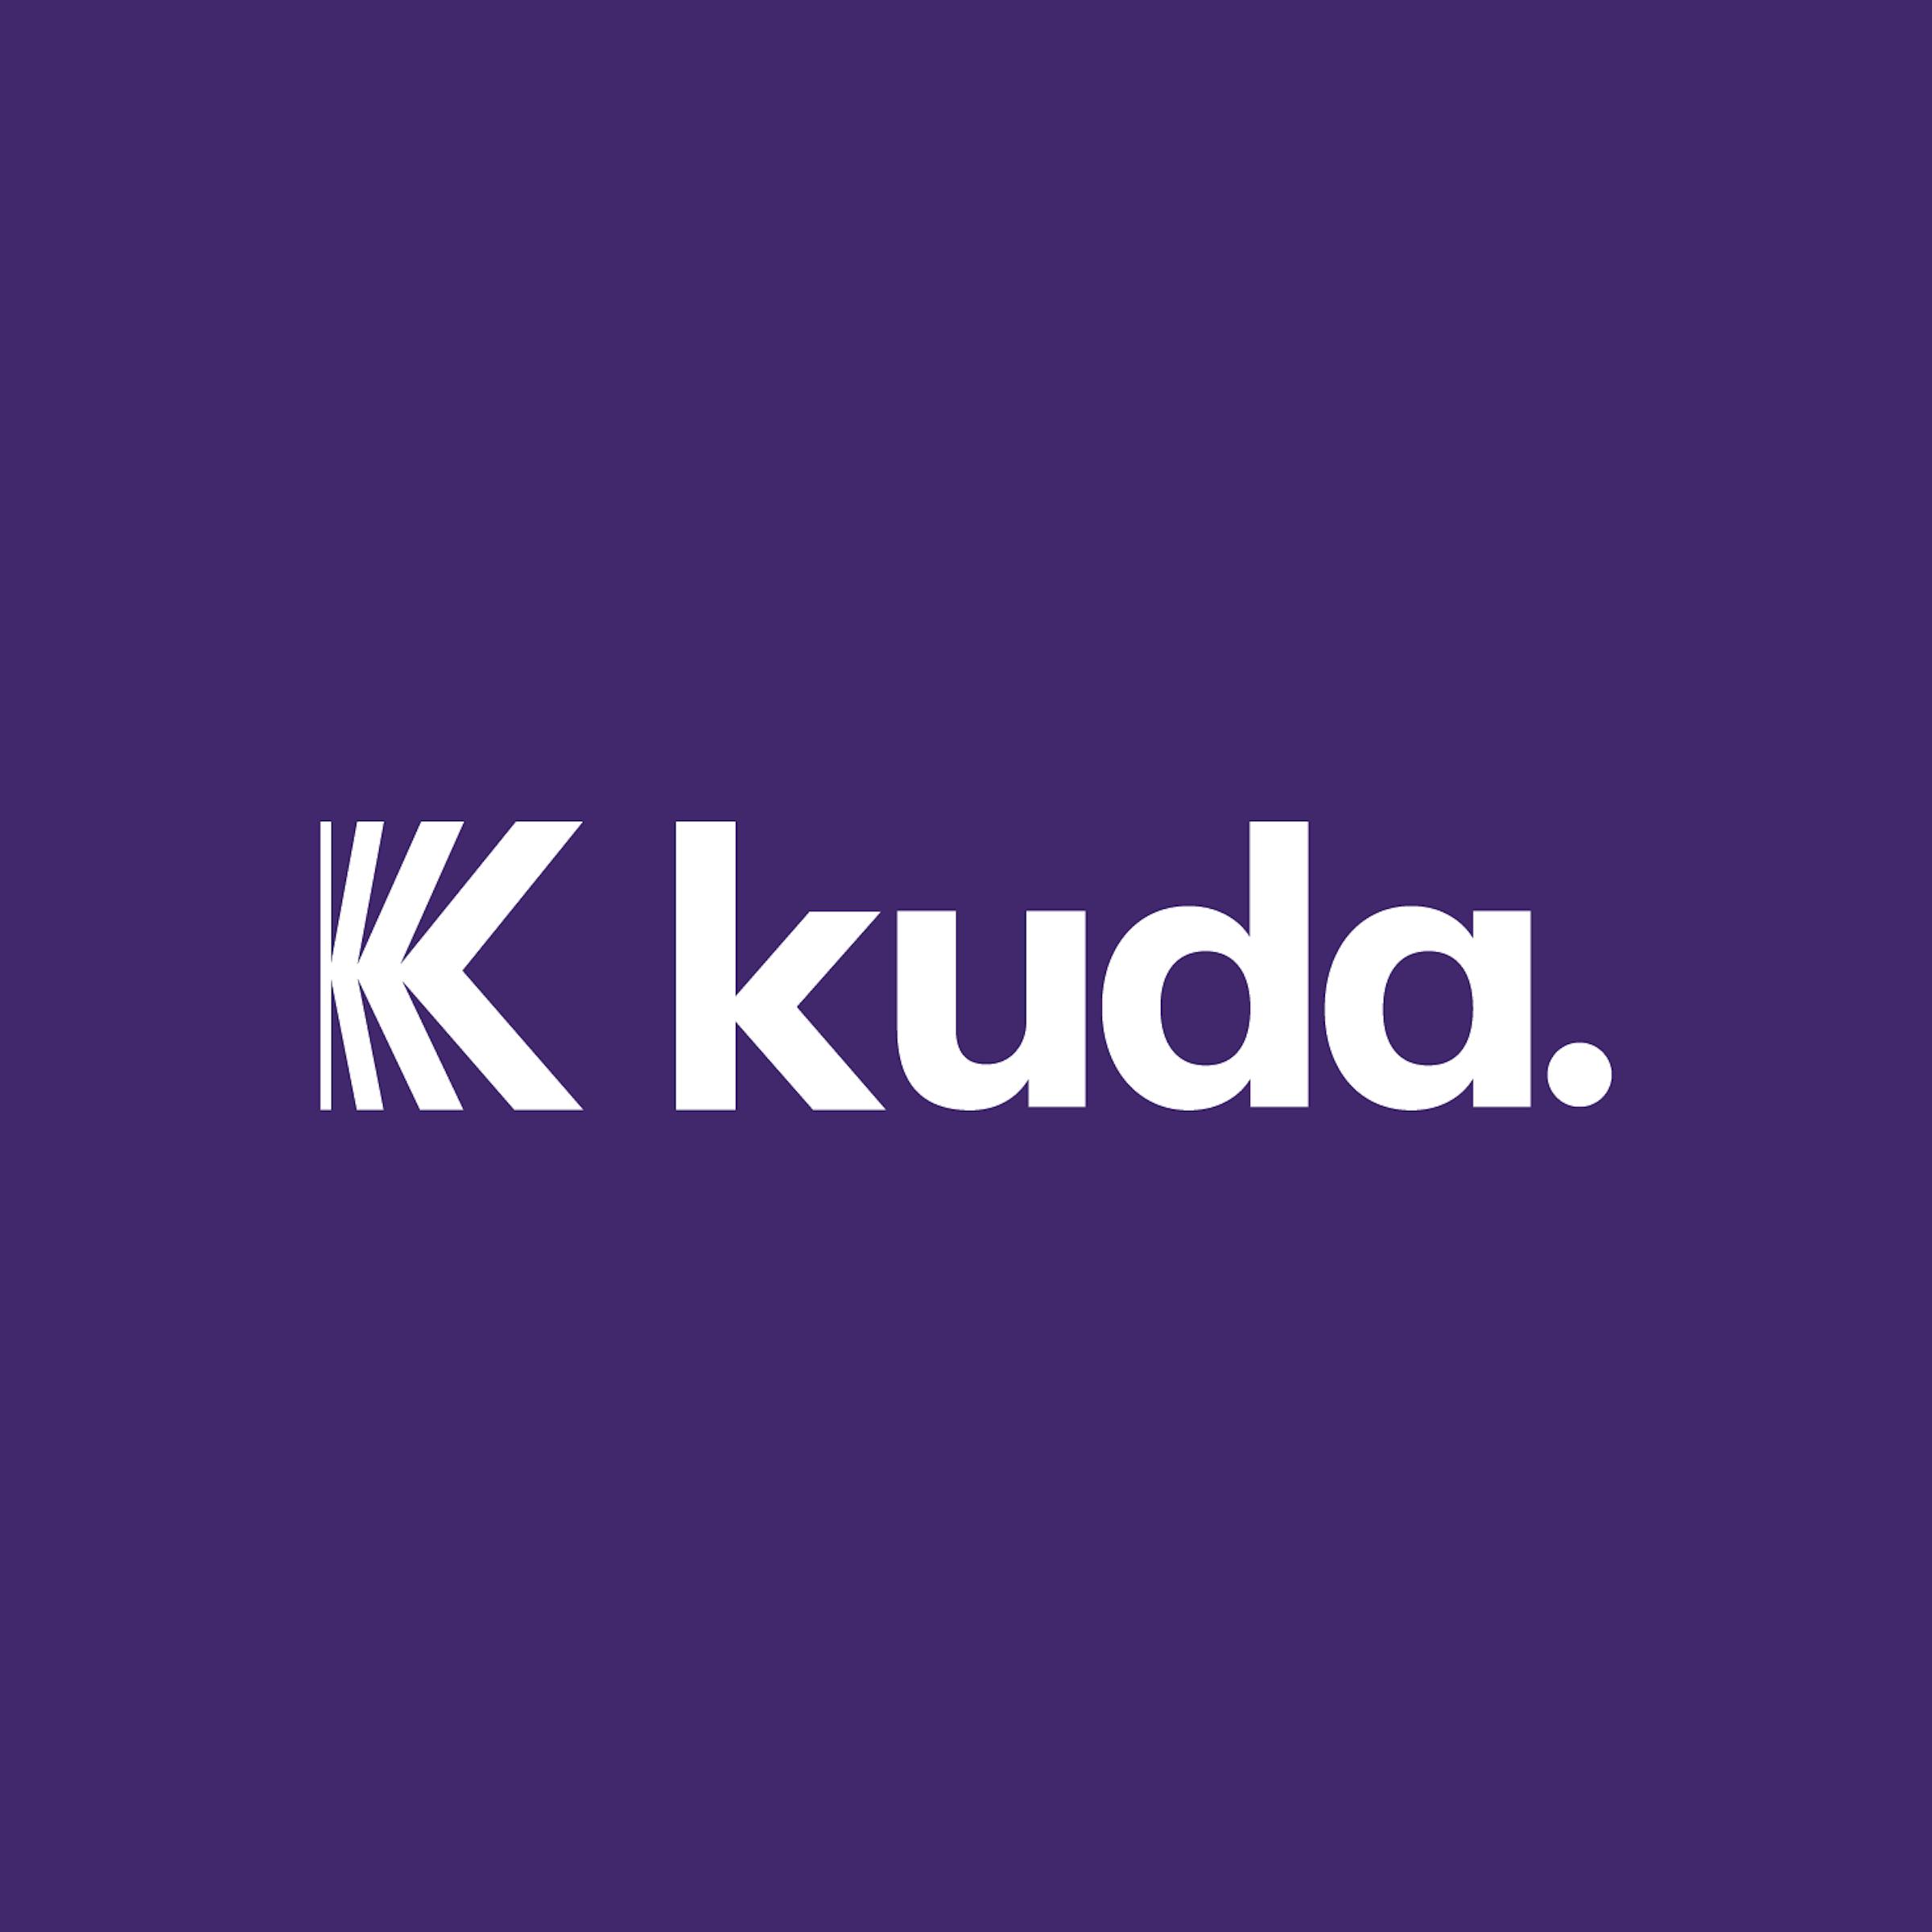 Kuda Bank logo